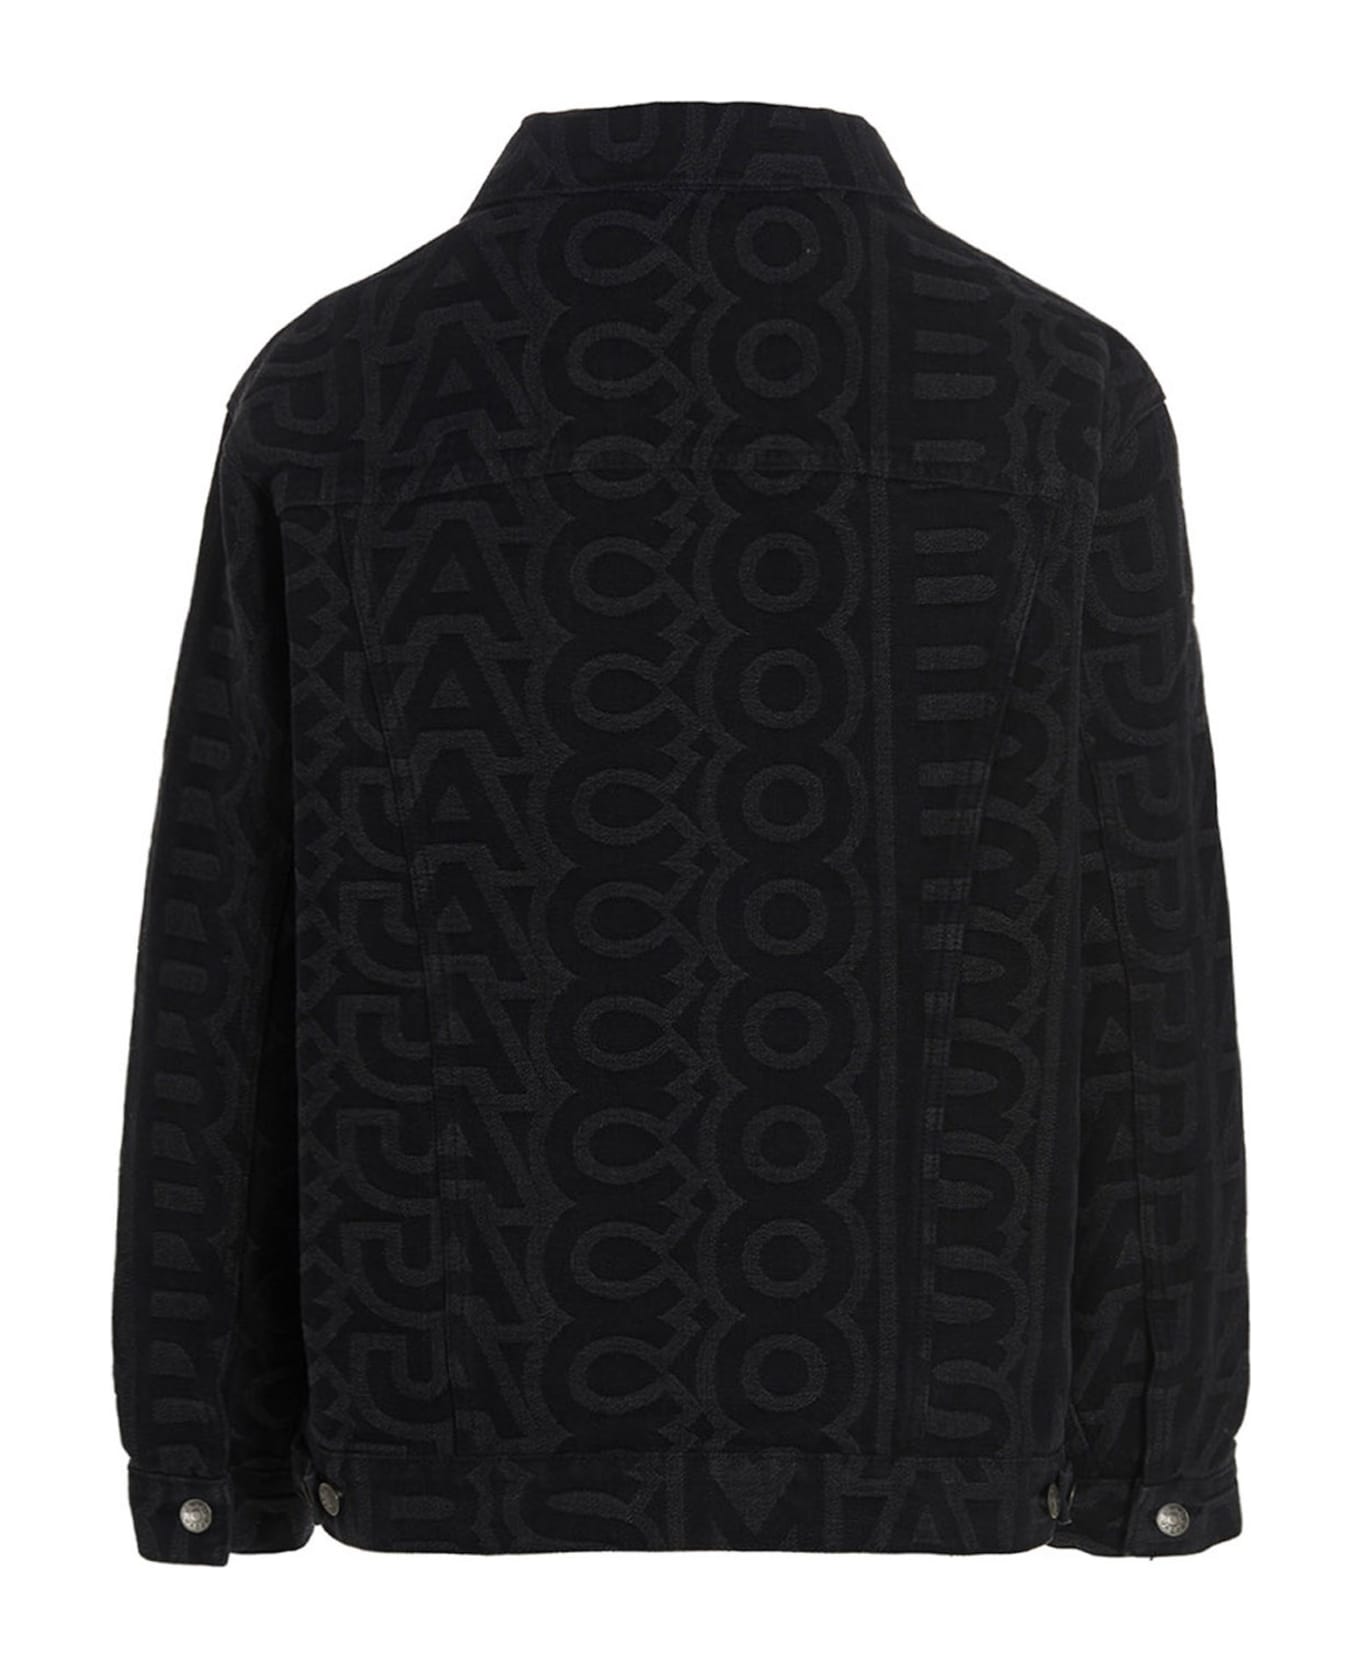 Marc Jacobs Embroidered Denim Jacket - Black